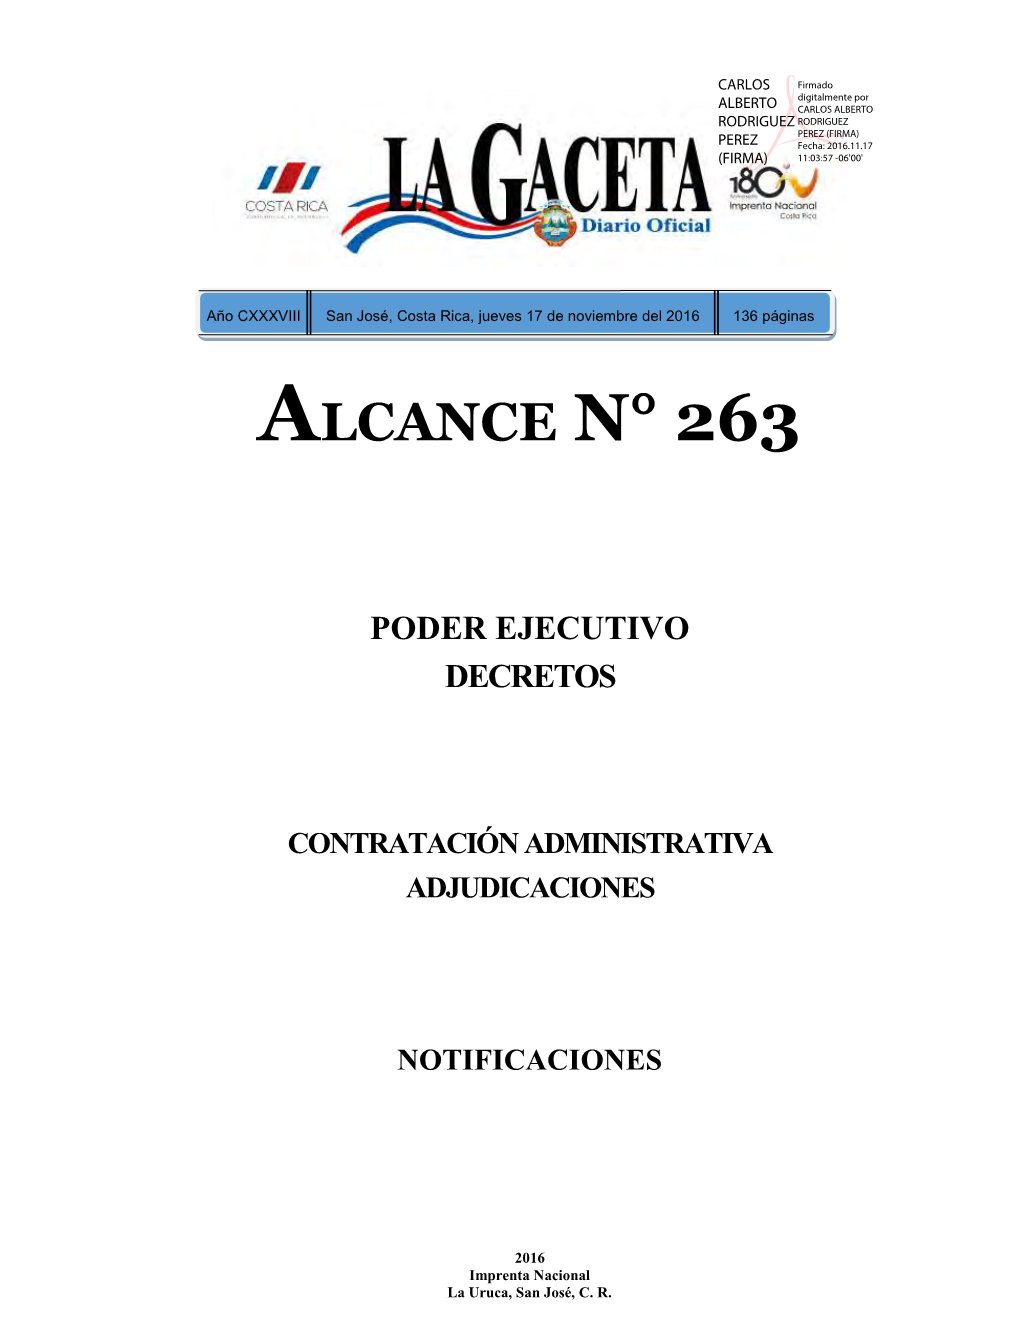 ALCANCE DIGITAL N° 263 a La Gaceta 221 De La Fecha 17 11 2016